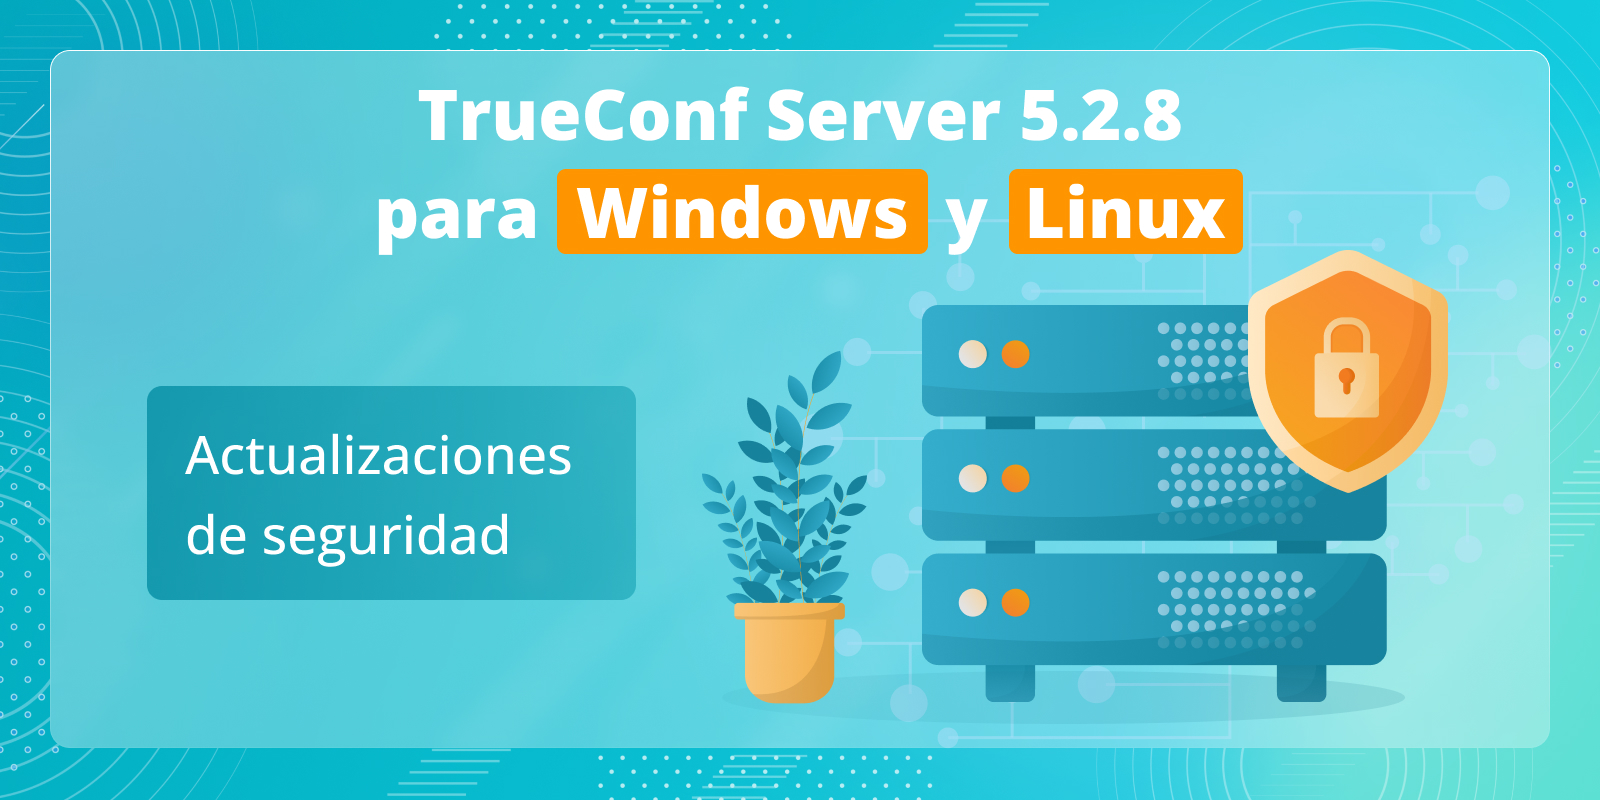 TrueConf Server 5.2.8: Actualizaciones de seguridad 5